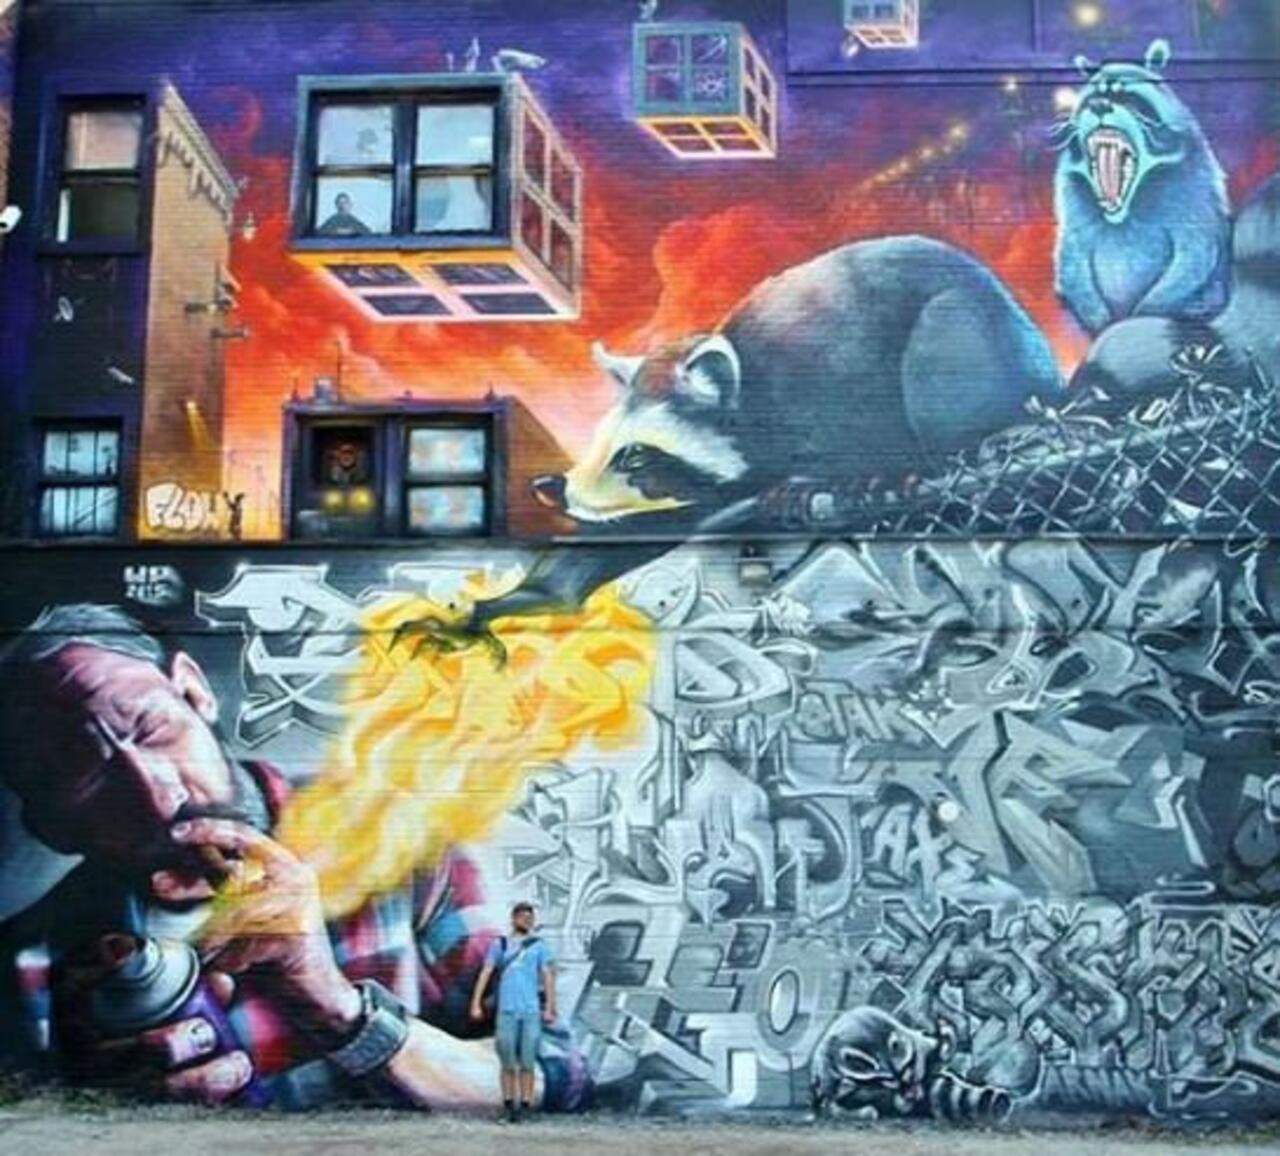 RT @DavidBonnand: ..., 2015 #Monreal #Canada
#Monk-E #K6a ()
#streetart #graffiti #Art http://t.co/6MFWcMjLSD